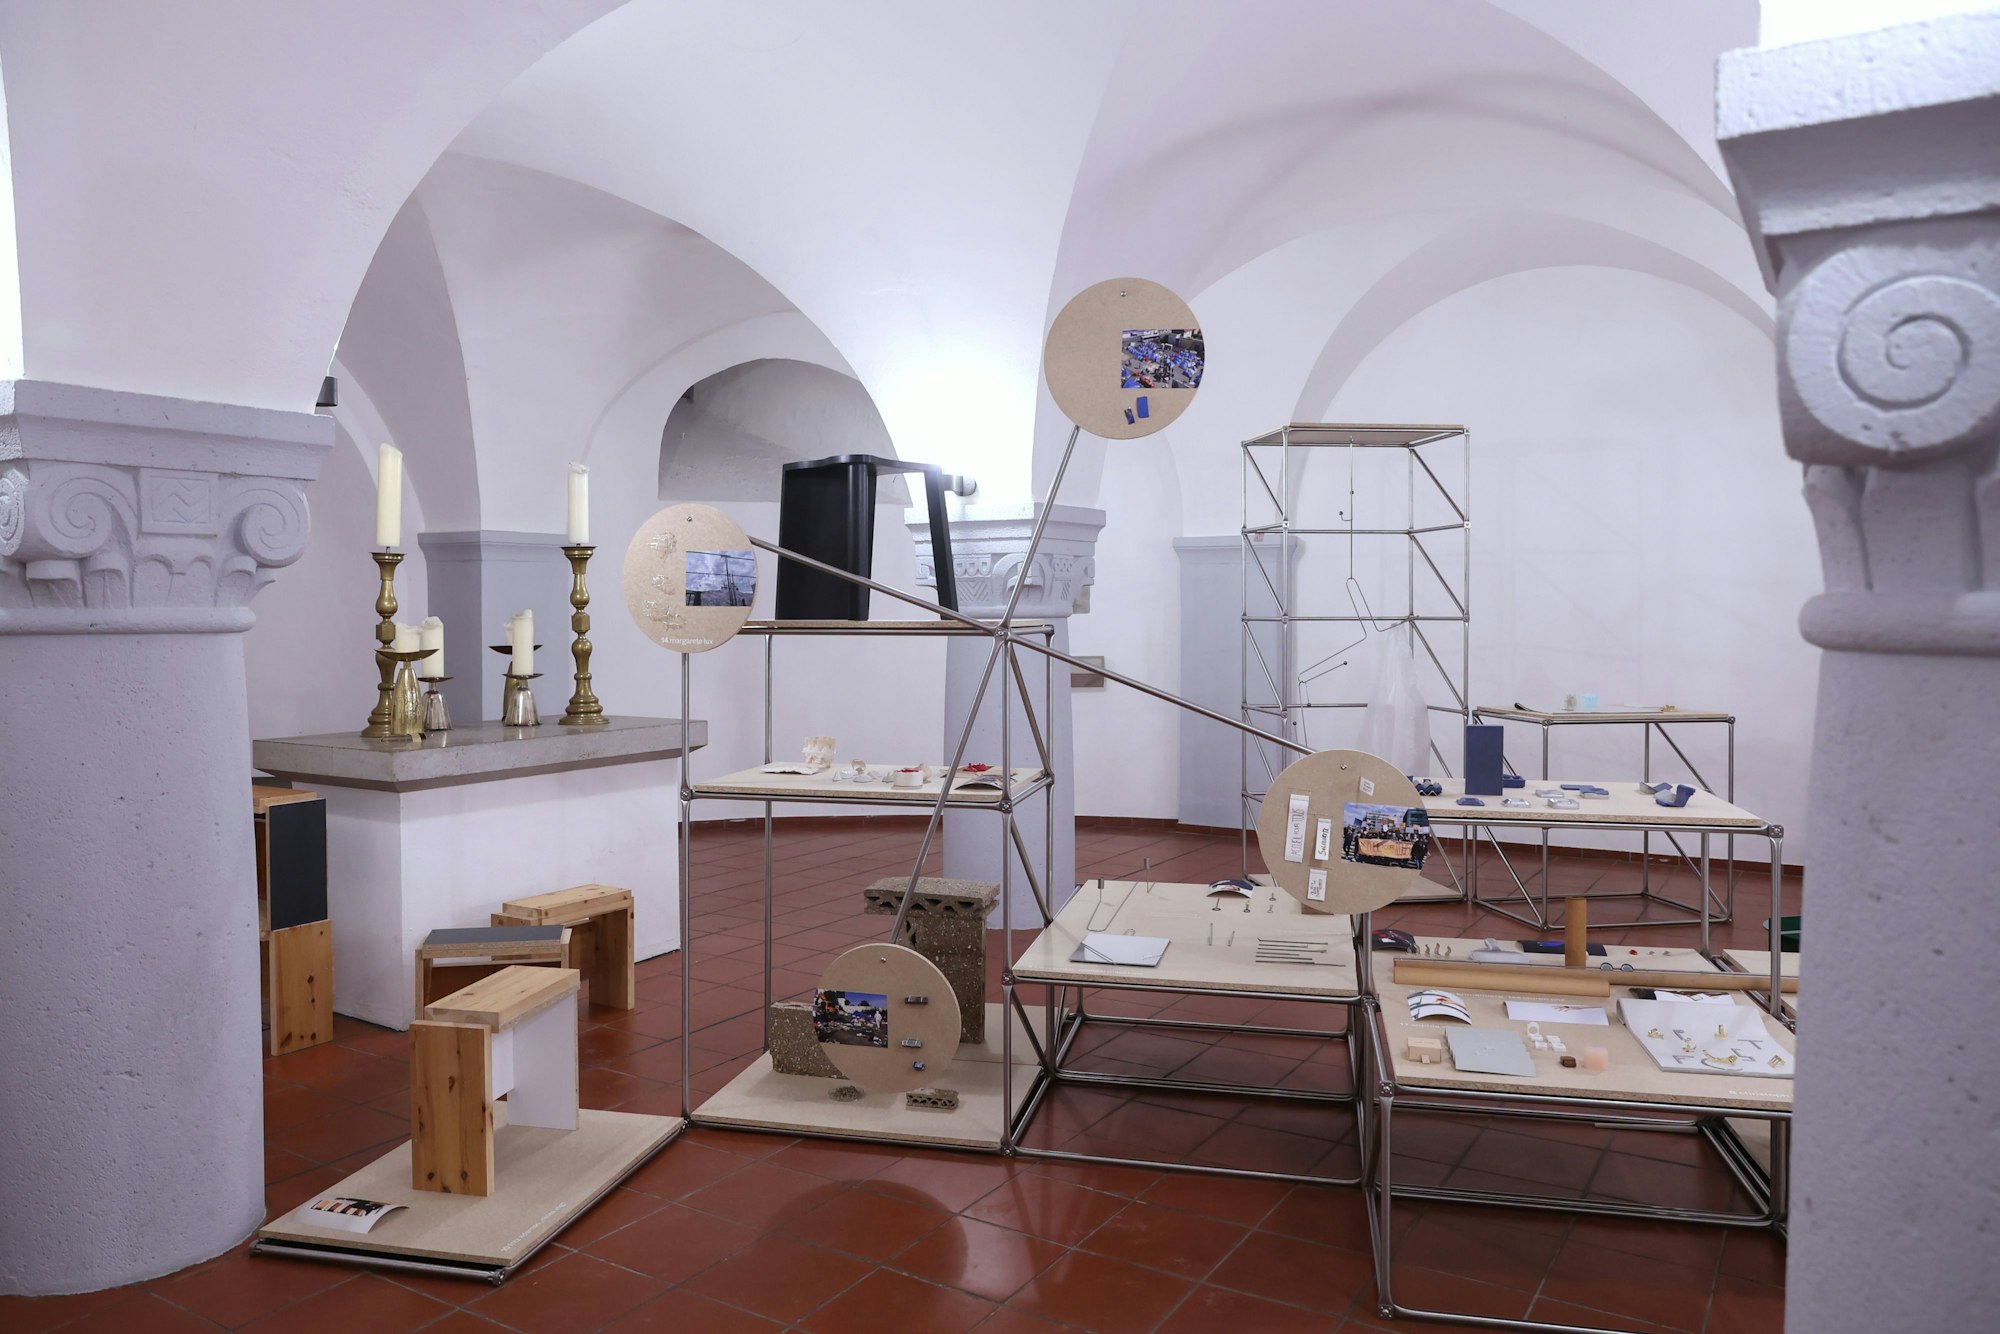 In der Krypta von St. Michael stellen Studierende des new craft object design ihre Objekte aus